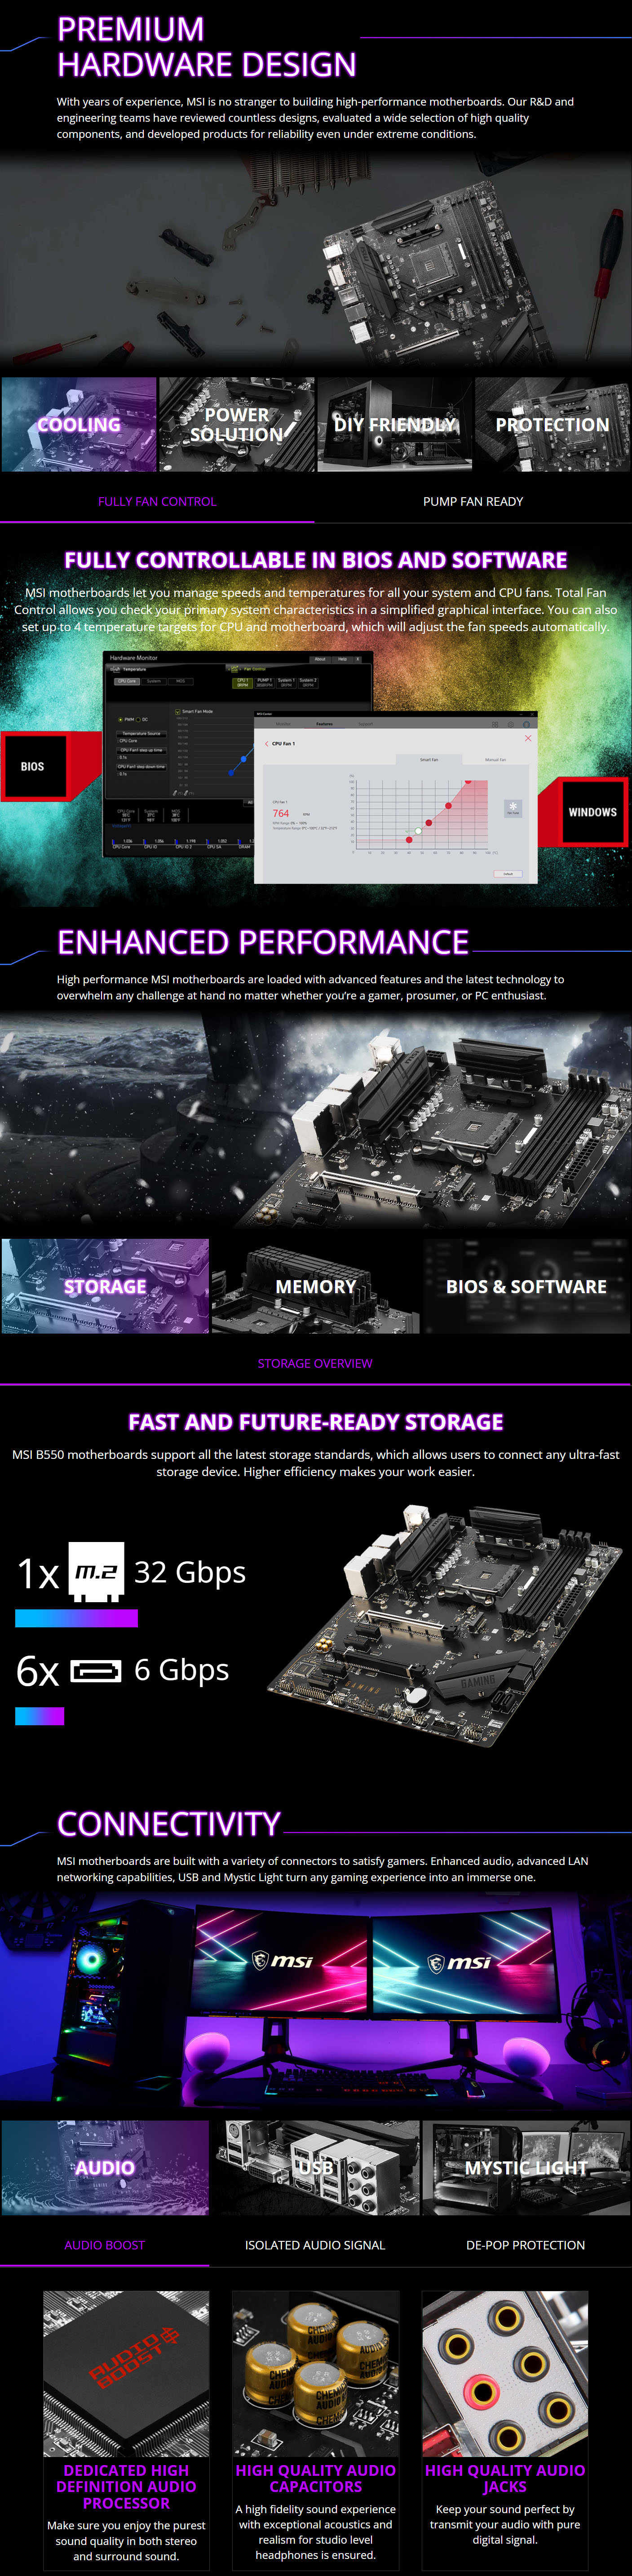 AMD-AM4-MSI-B550-Gaming-Gen3-AM4-ATX-Motherboard-2